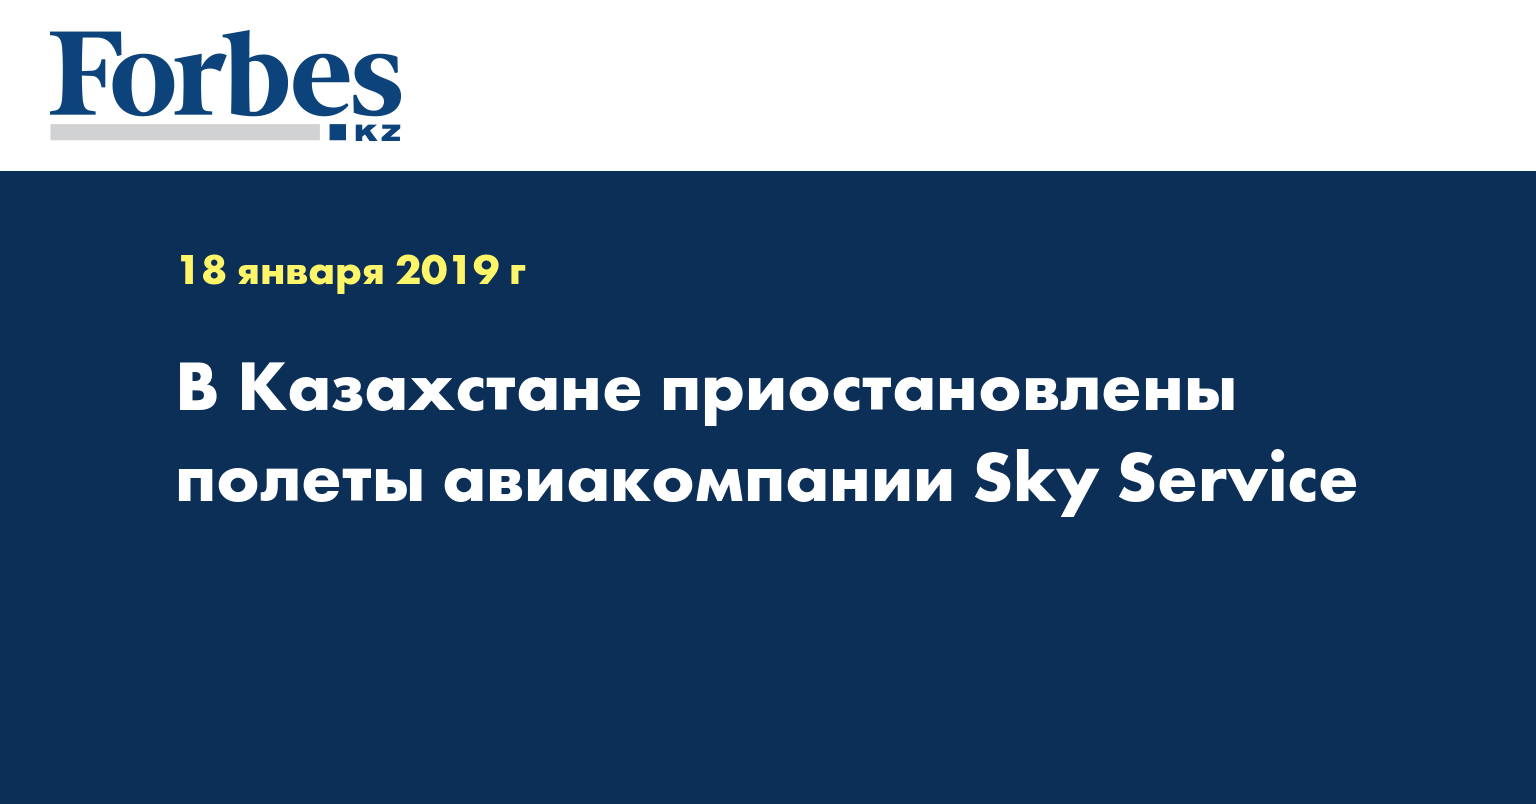 В Казахстане приостановлены полеты авиакомпании Sky Service